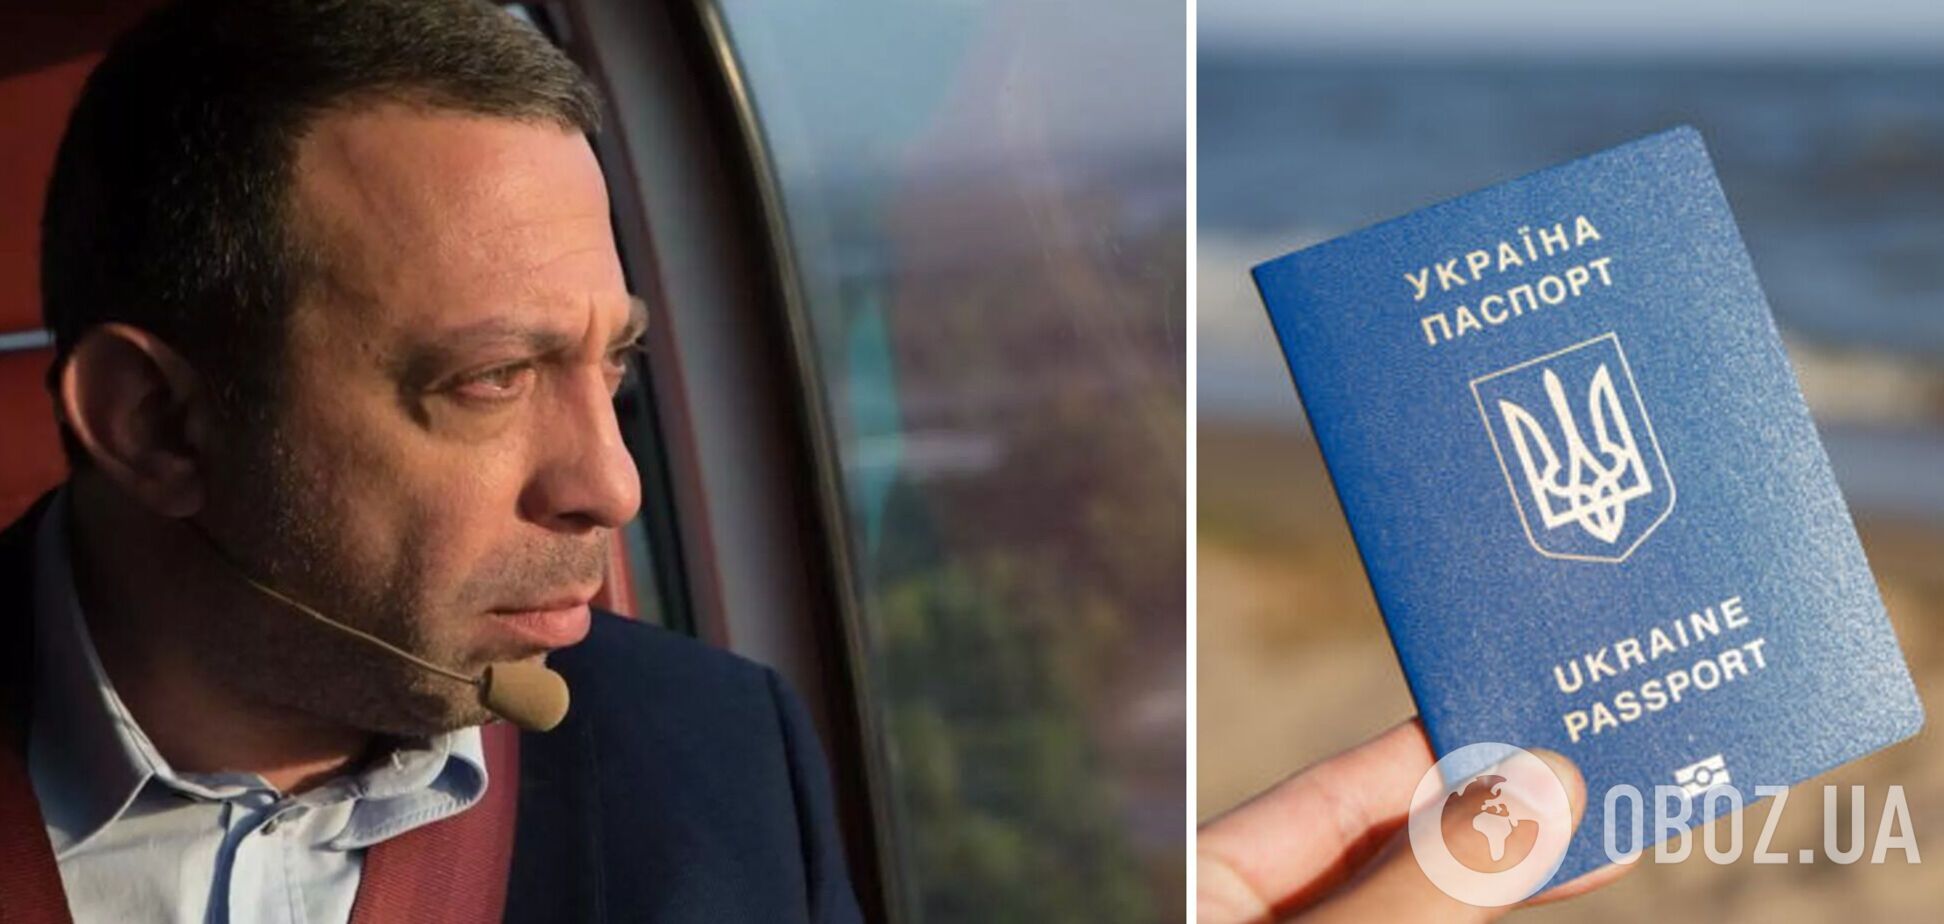 Корбан впервые прокомментировал изъятие паспорта Украины и показал акт пограничников. Фото